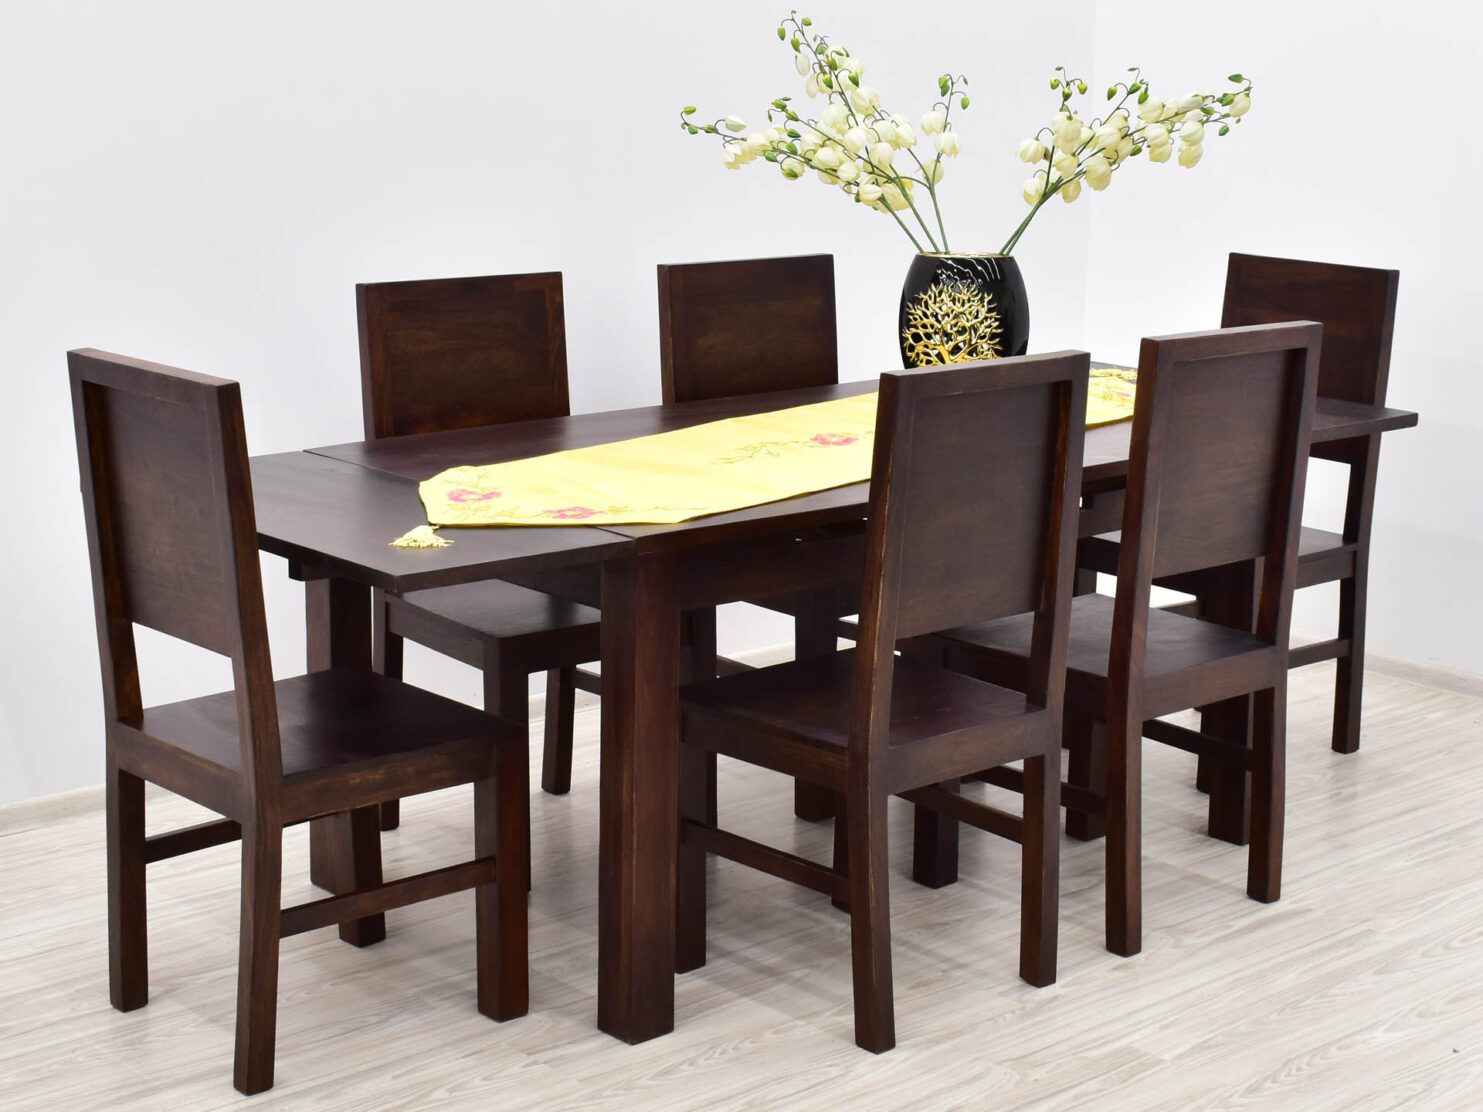 komplet-obiadowy-kolonialny-stol-rozkladany-6-krzesel-pelne-oparcia-lite-drewno-palisander-ciemny-braz